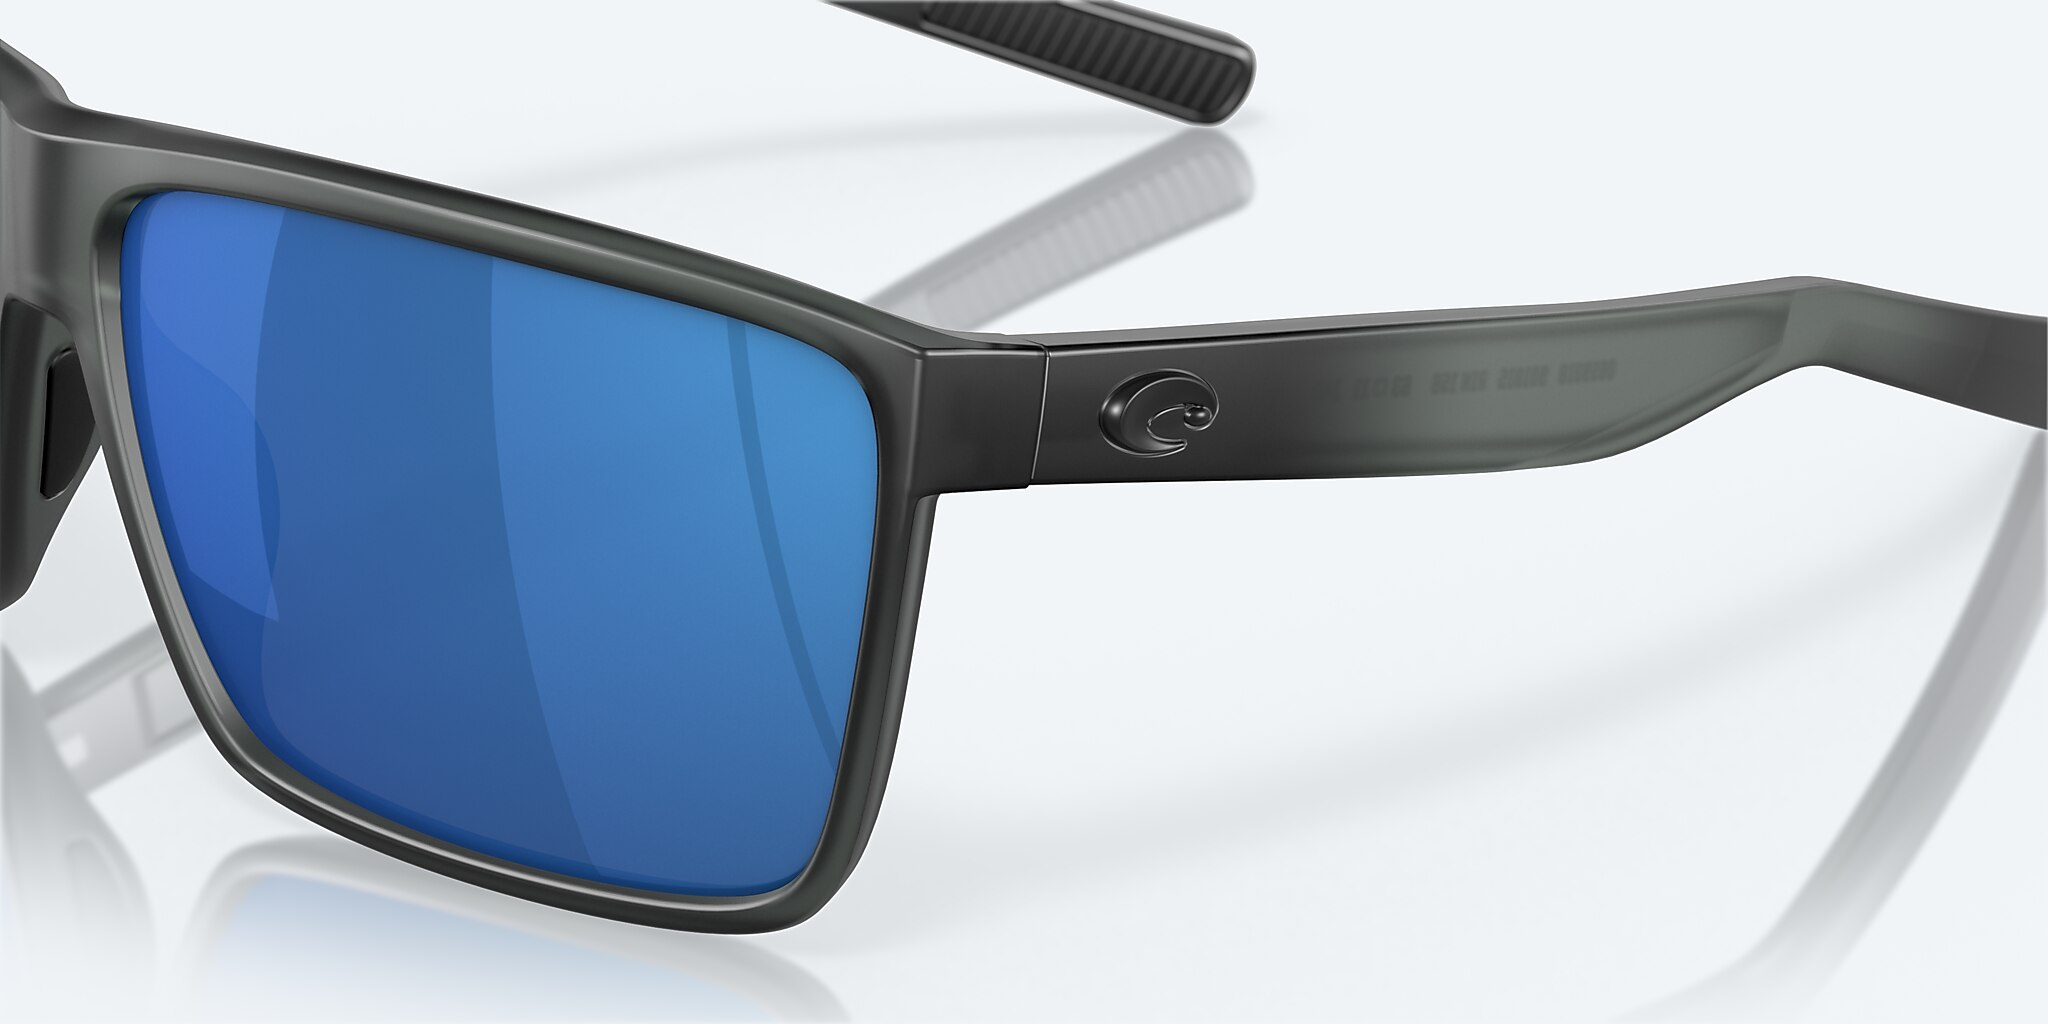 Costa Del Mar Rincon Sunglasses Matte Smoke Crystal / Blue Mirror 580G